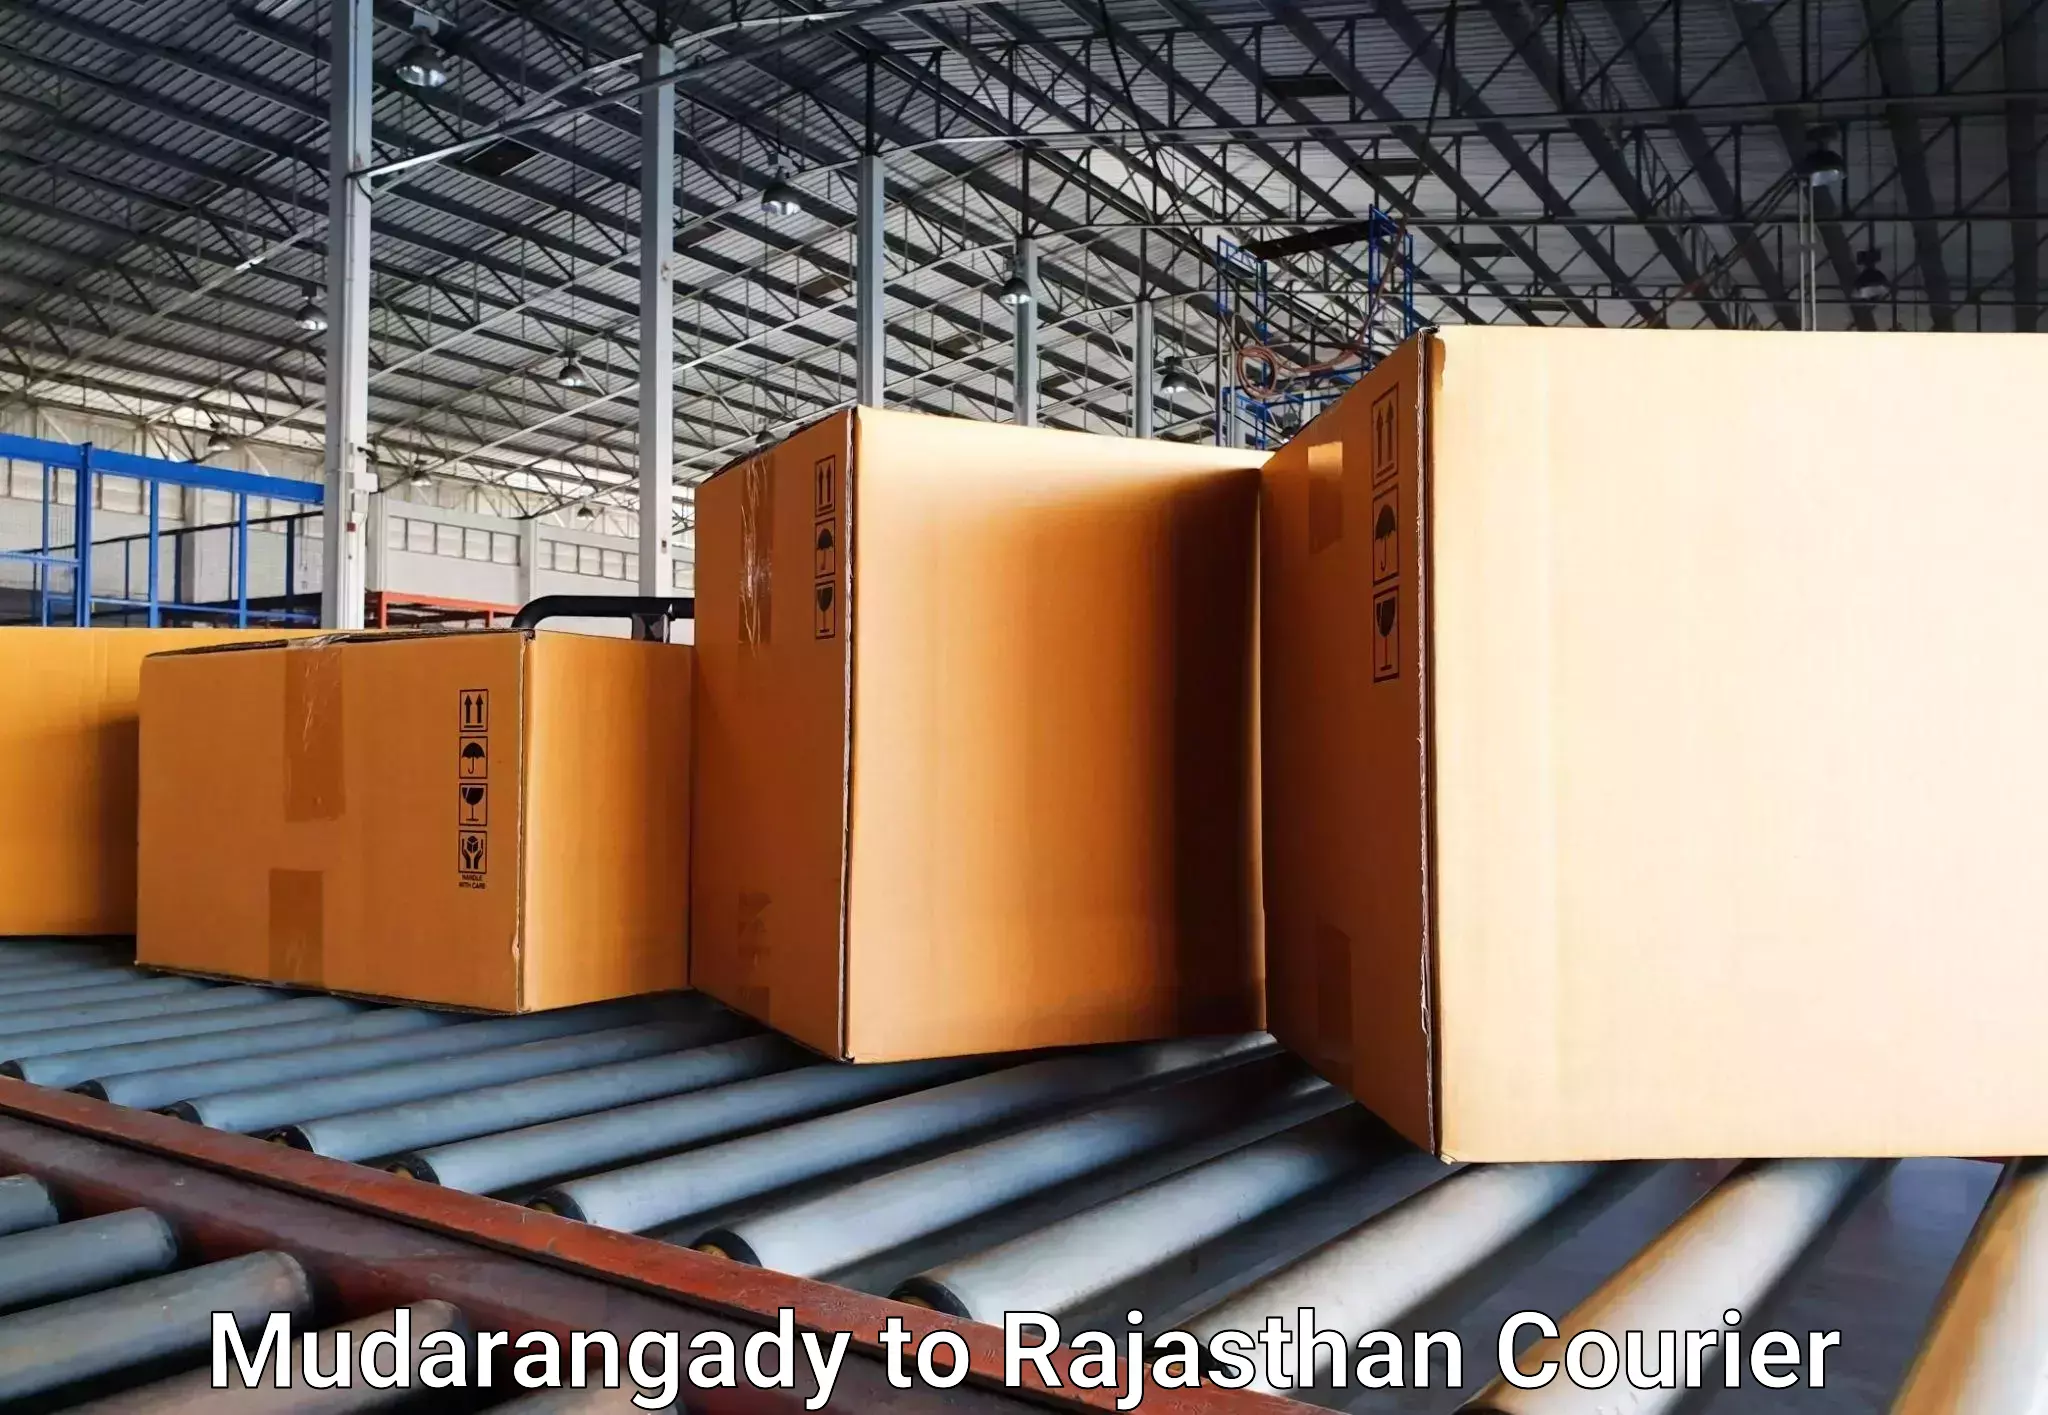 Luggage transfer service Mudarangady to Bandikui